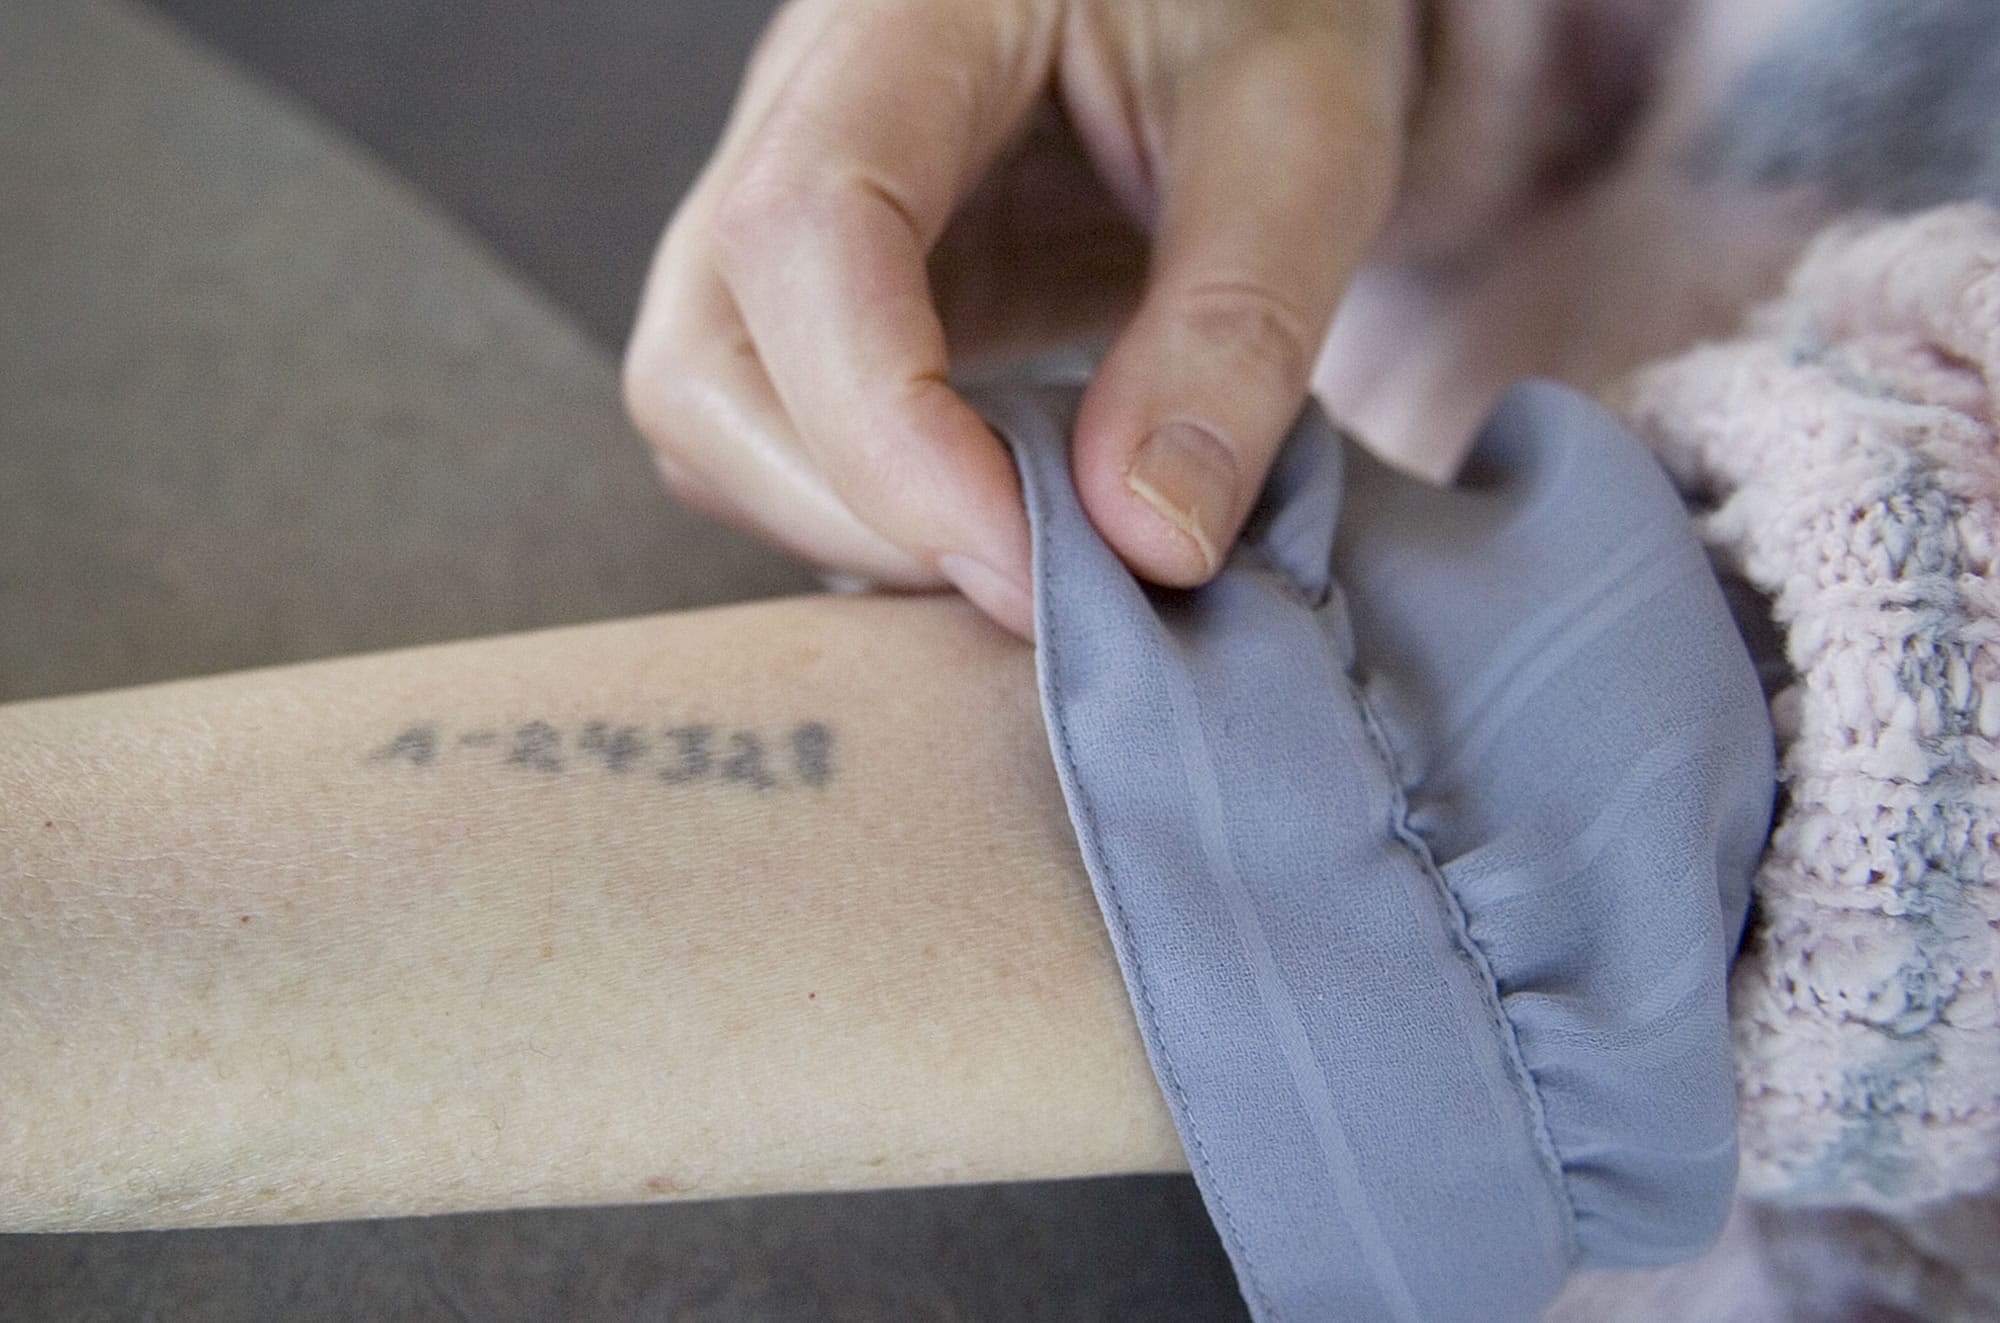 Diana Golden's Auschwitz tattoo was still legible decades later.